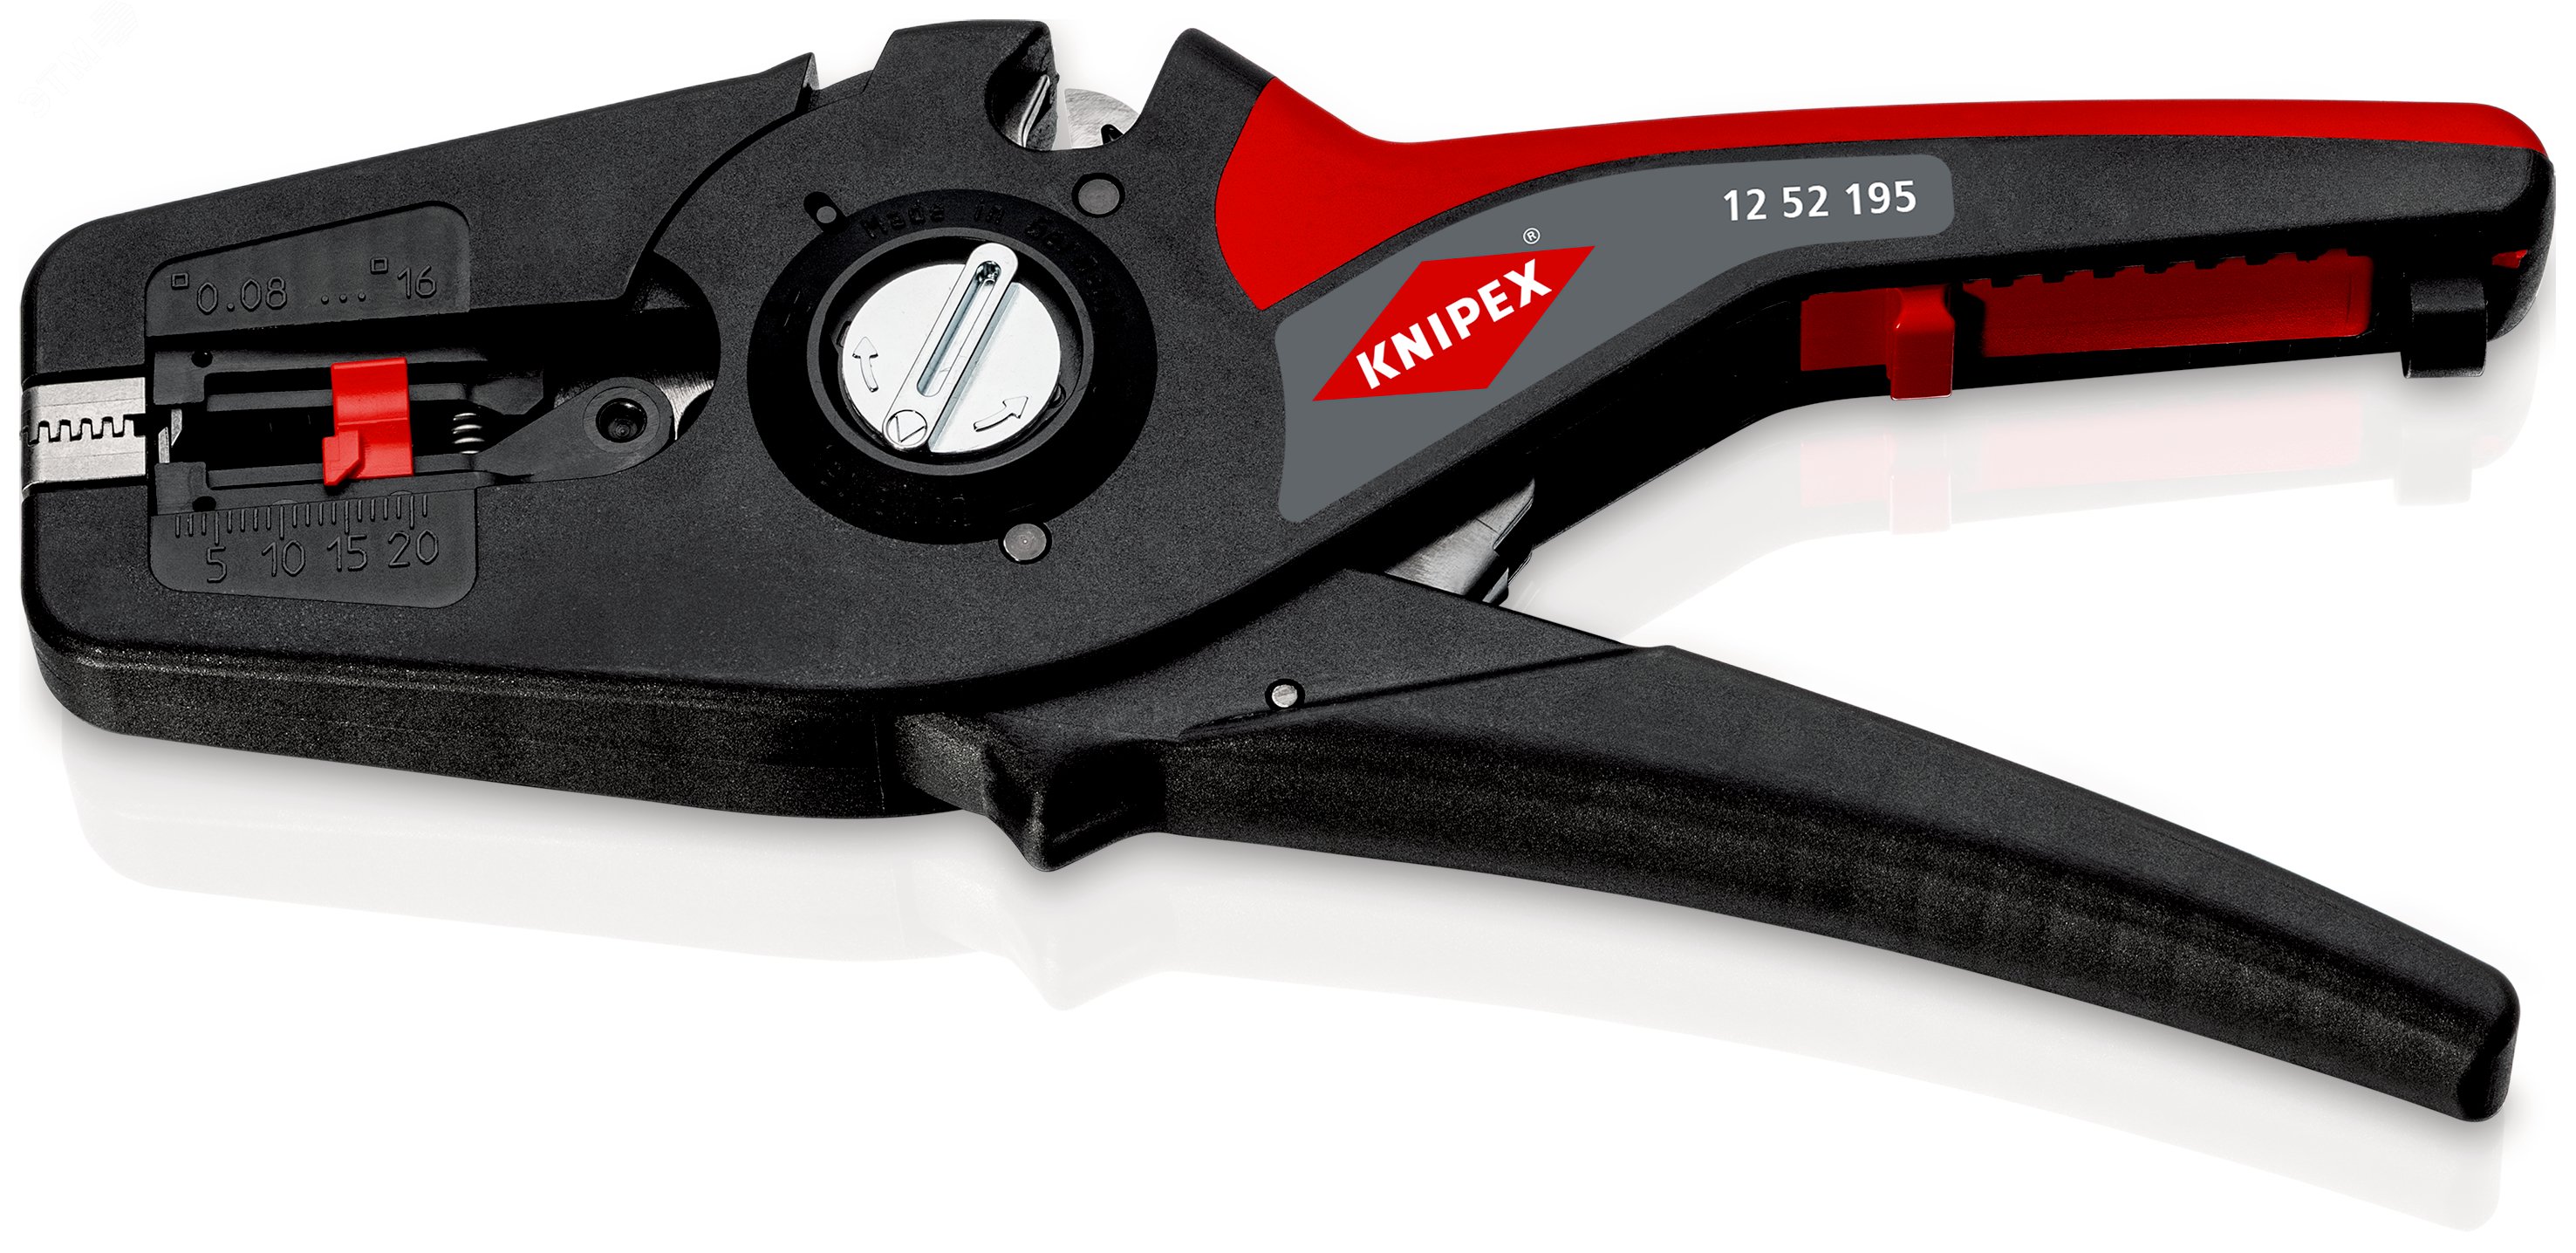 Стриппер автоматический PreciSTrip16 c кабелерезом быстросменный блок ножей зачистка: 008 - 16 мм (AWG 28 - 5) L-195 мм с держателем для торгового оборудования KN-1252195SB KNIPEX - превью 3